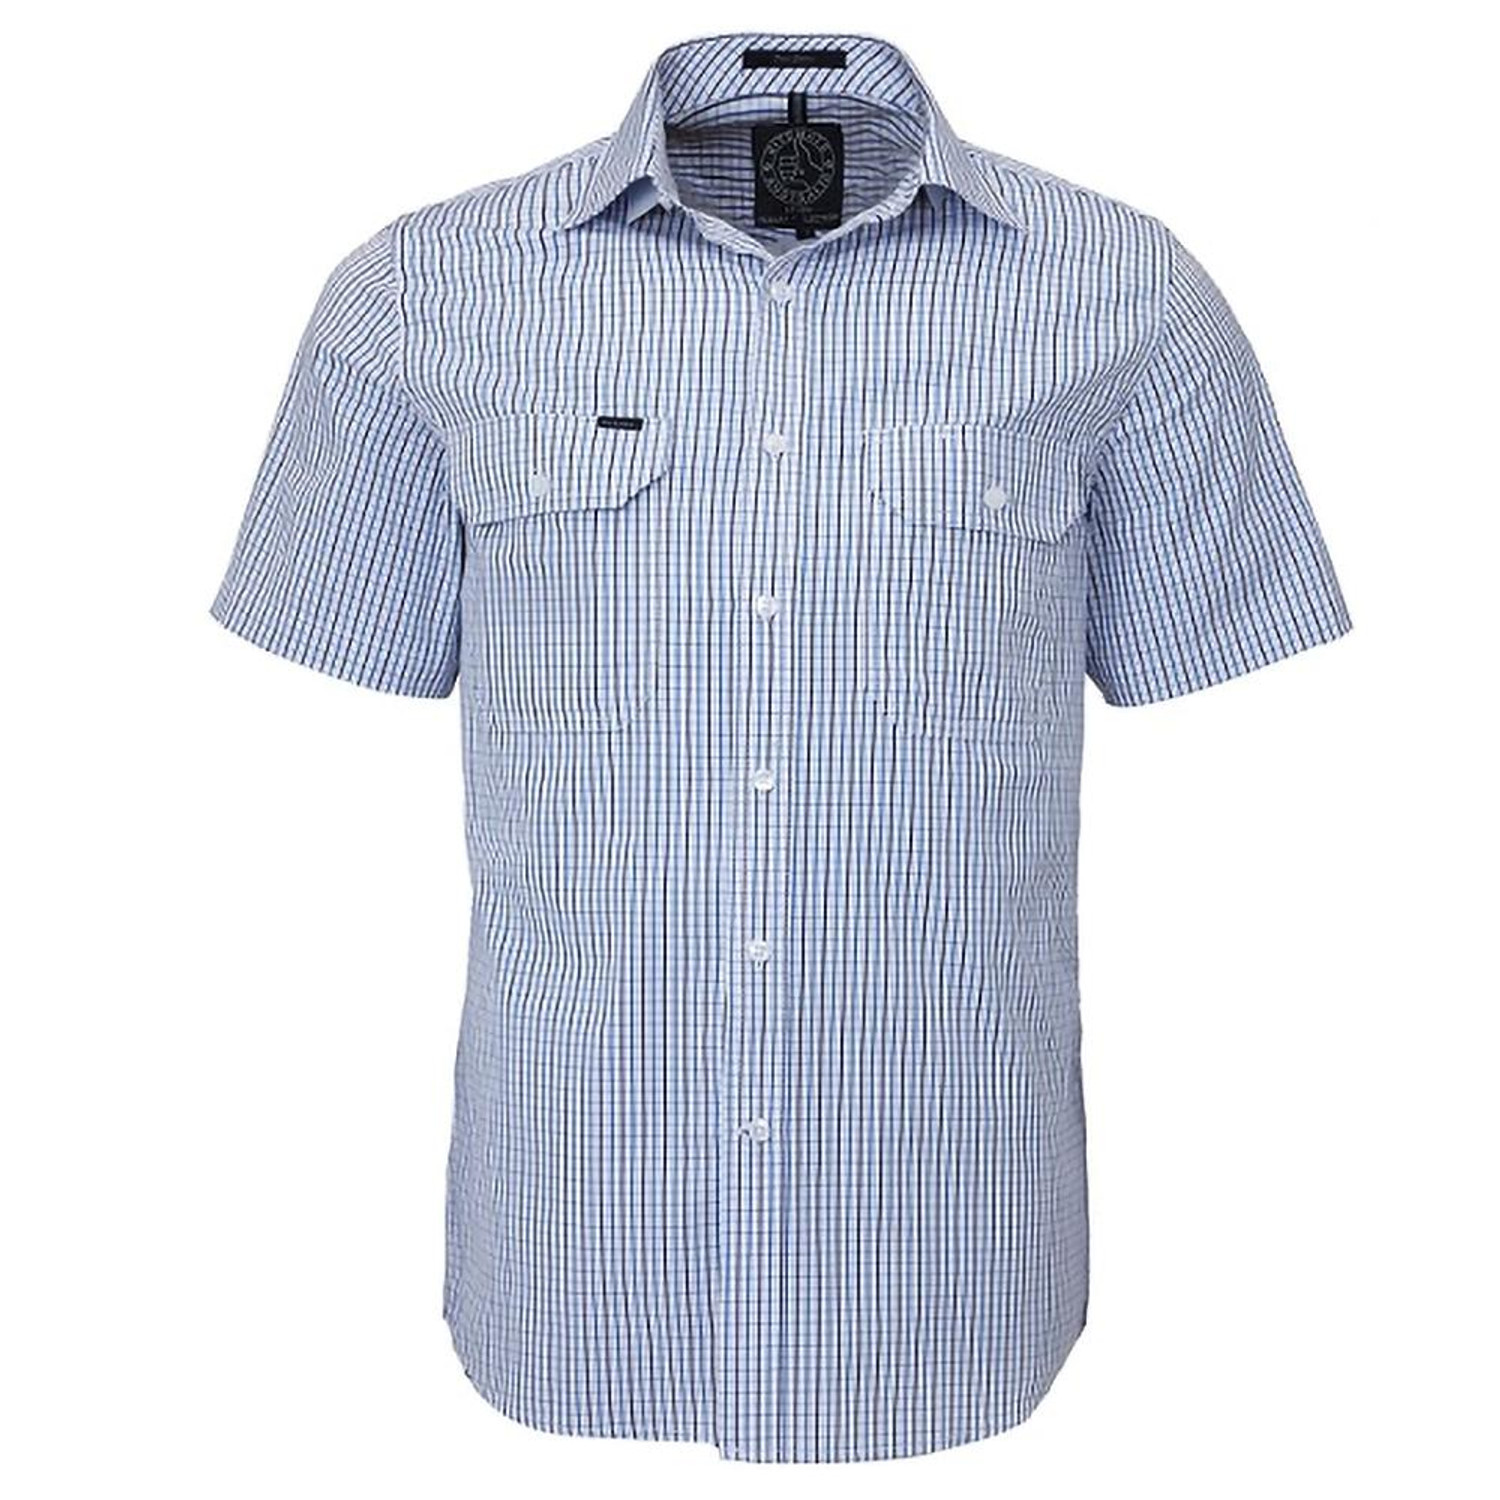 Ritemate RMPC011S Mens Short Sleeve Double Pocket Shirt in Blue/Navy/White Bulk Deal, Buy 4 for dollar59.95 Each